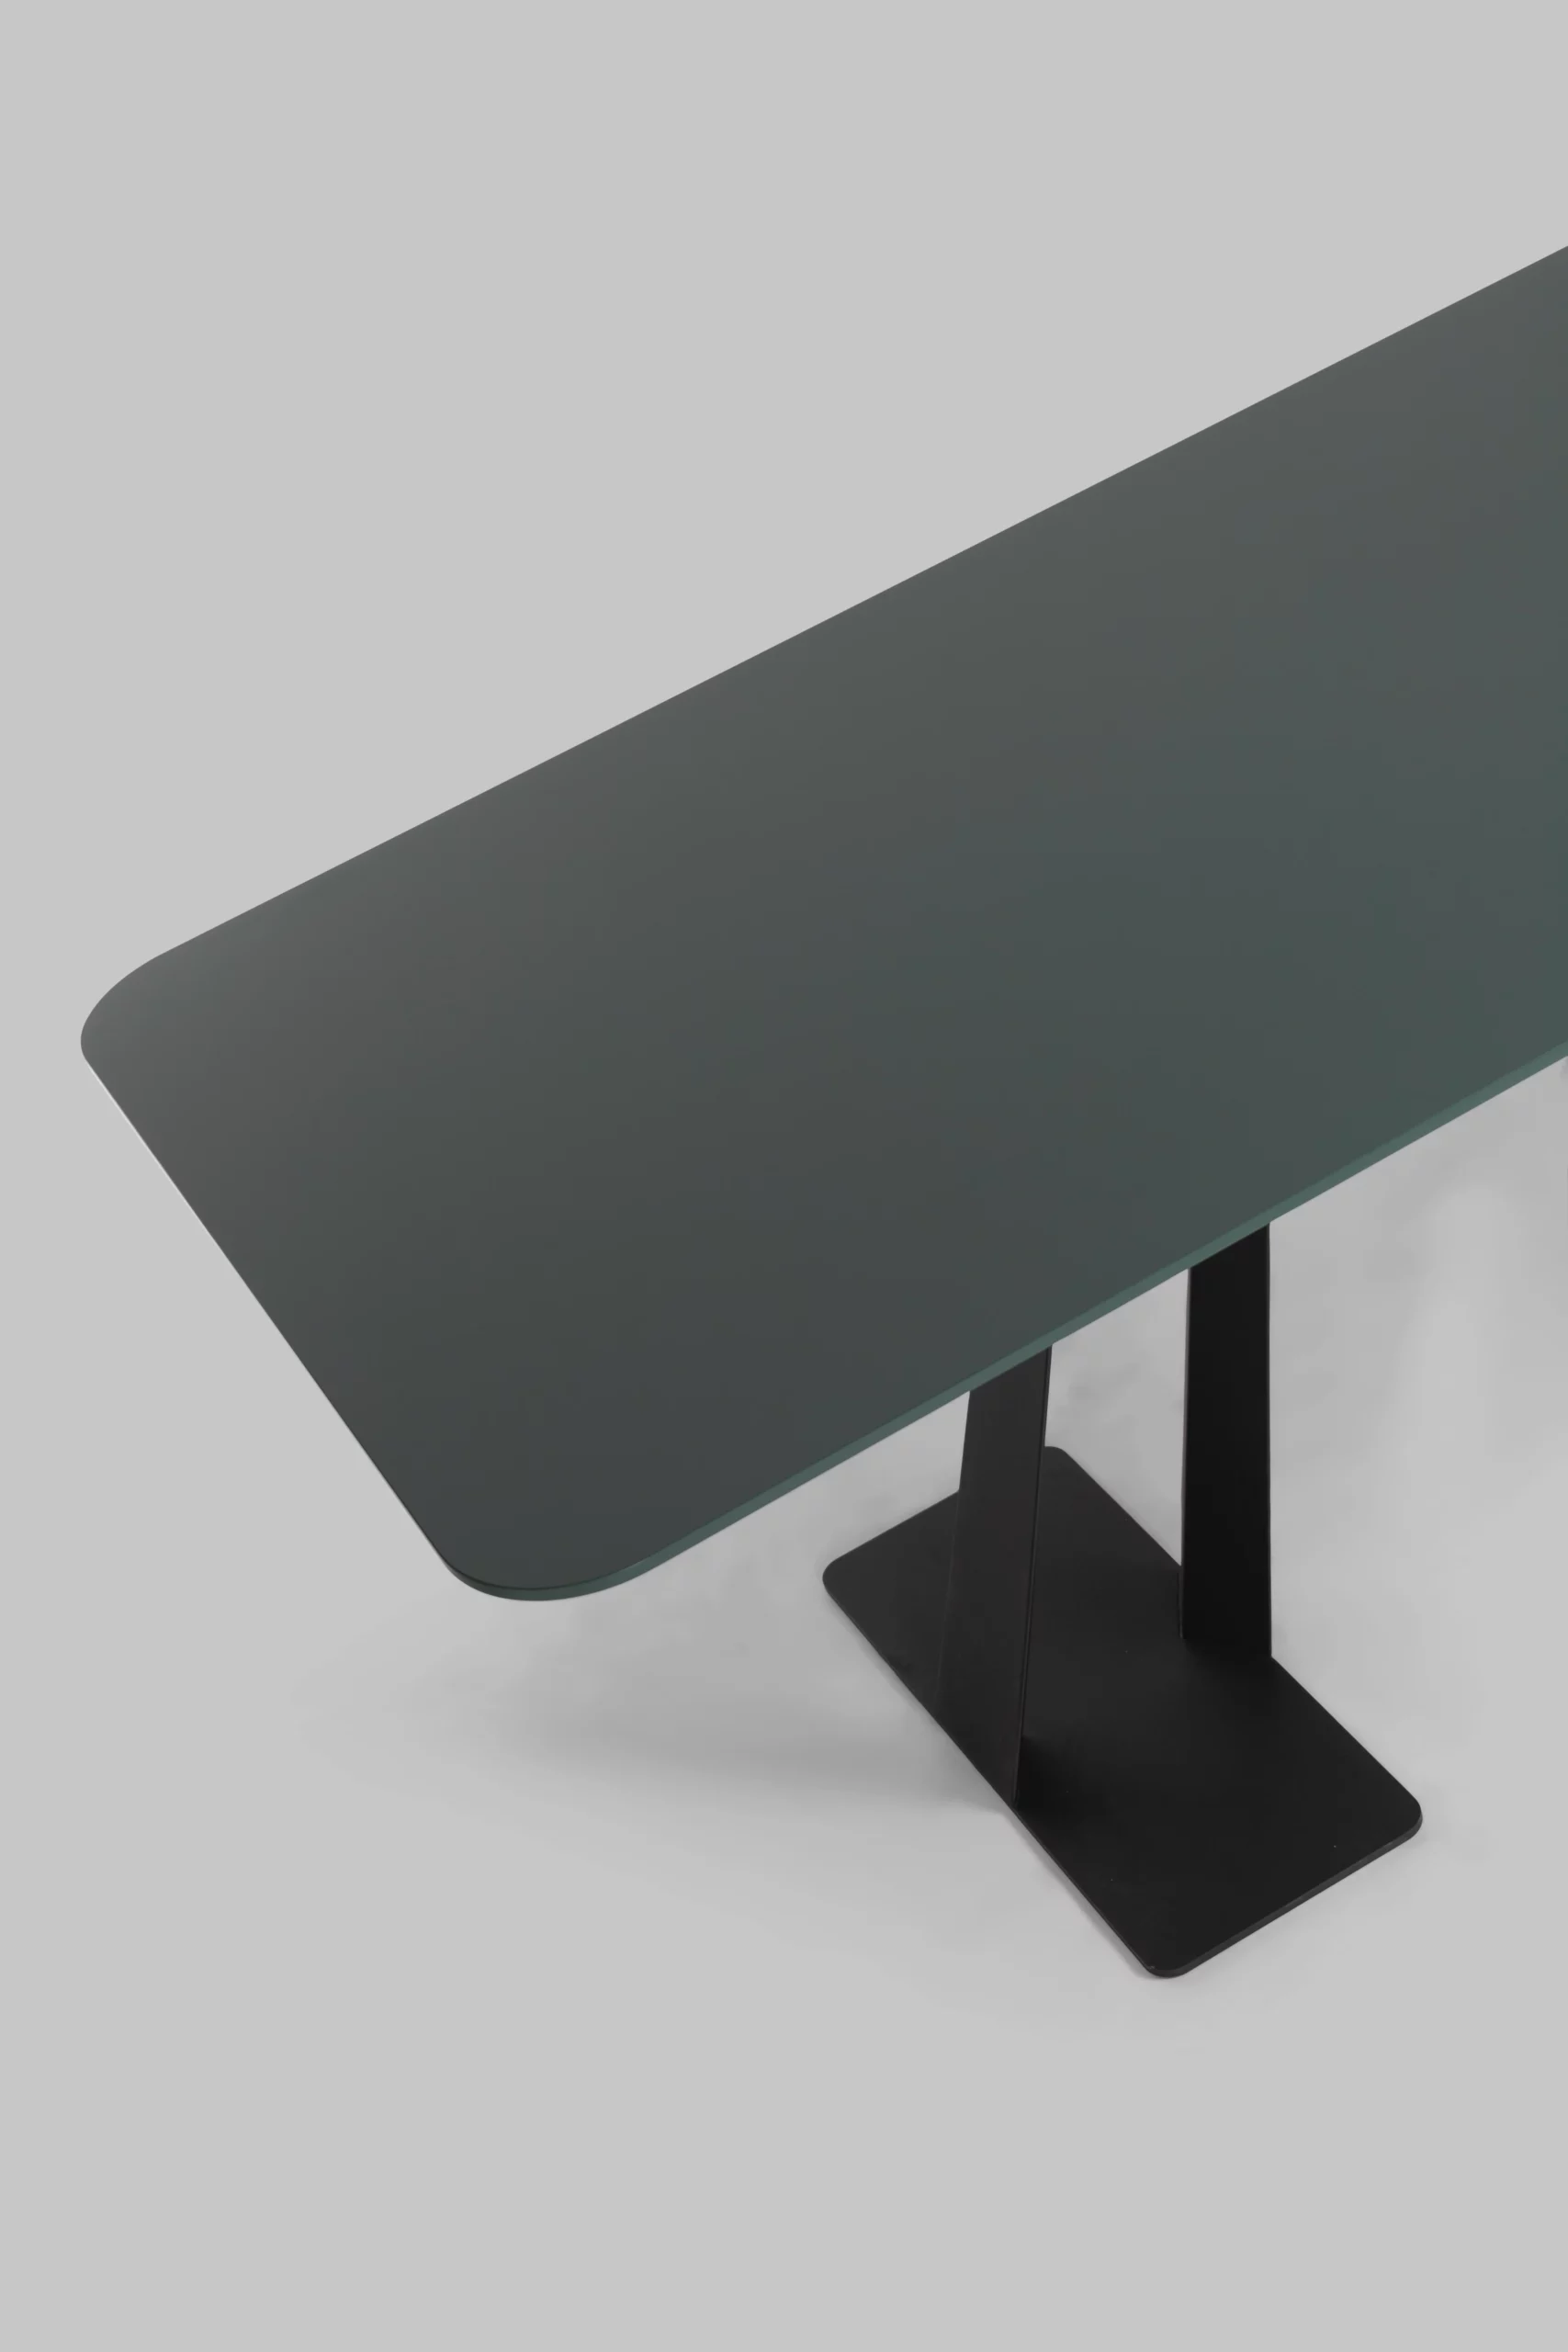 Harvink tafel Tosca blad Fenix groen met frame zwart fijnstructuur